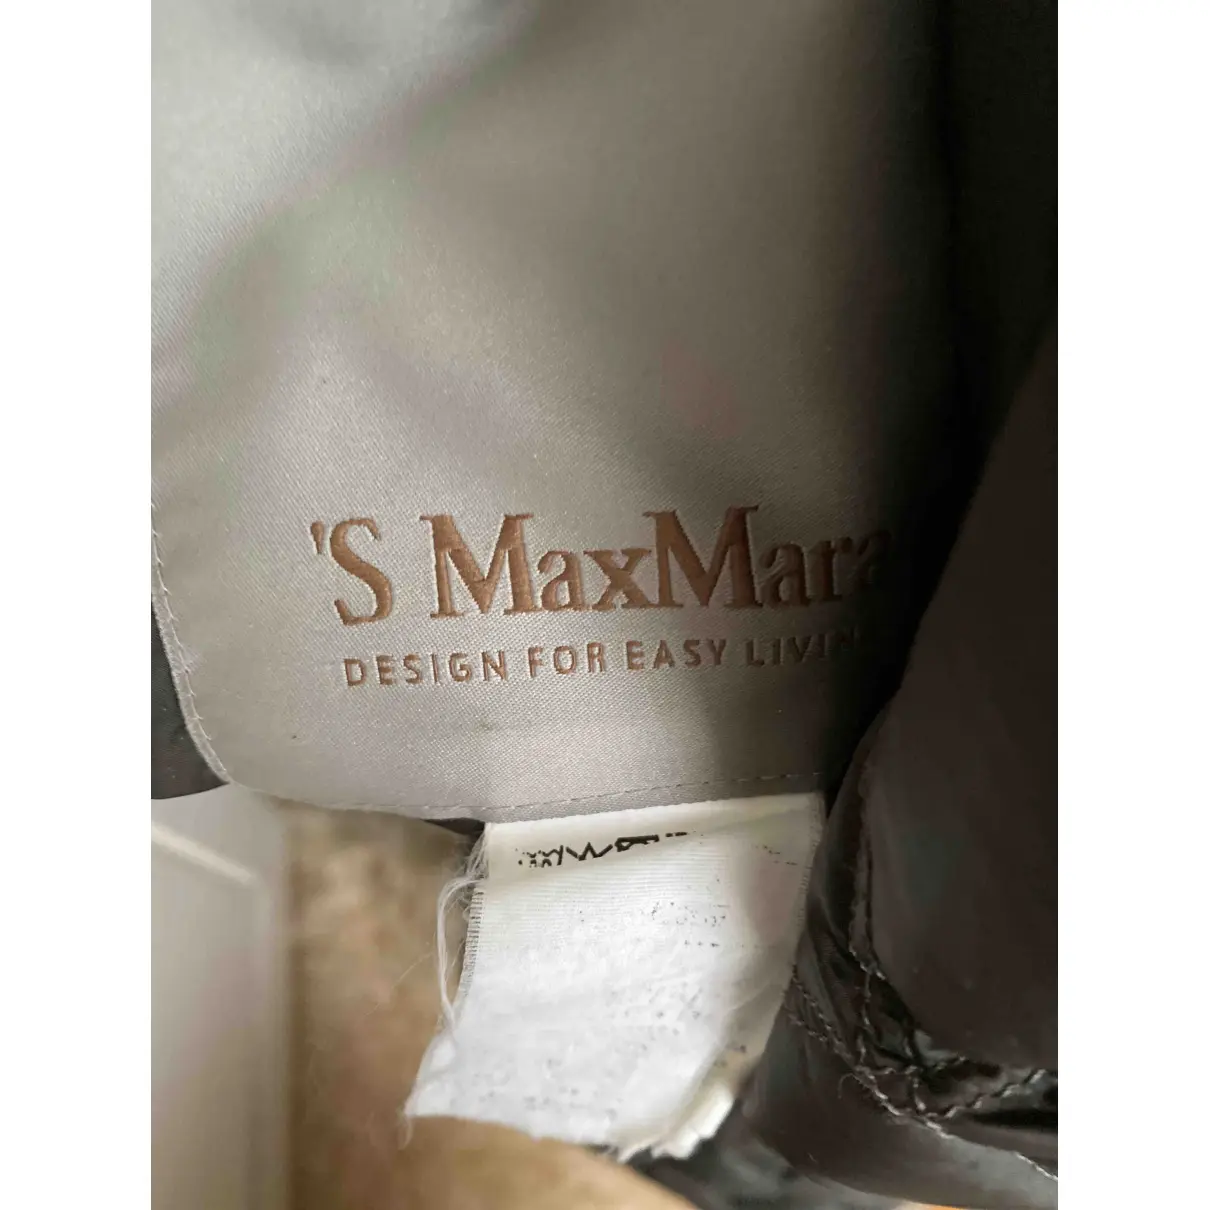 Luxury Max Mara 'S Coats Women